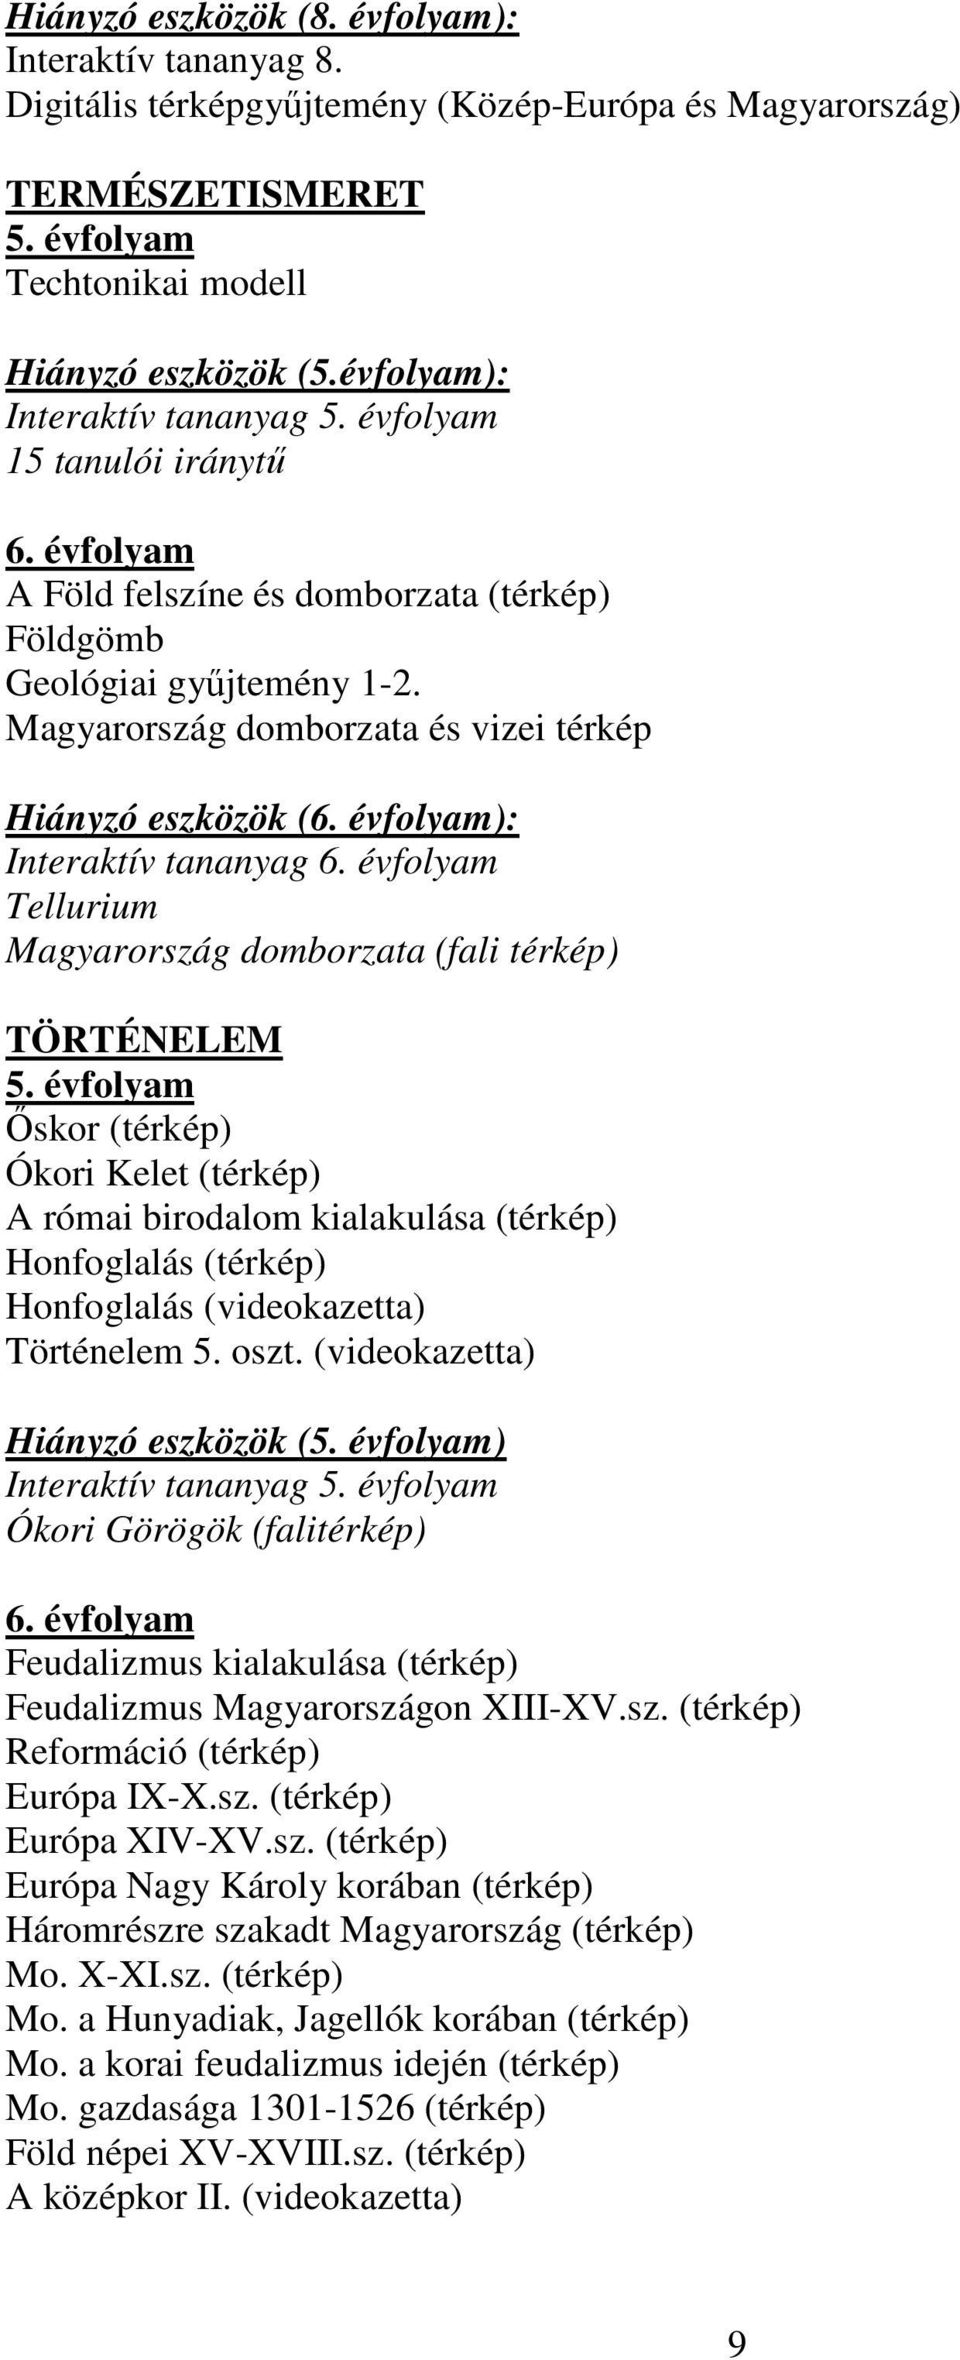 Magyarország domborzata és vizei térkép Hiányzó eszközök (6. évfolyam): Interaktív tananyag 6. évfolyam Tellurium Magyarország domborzata (fali térkép) TÖRTÉNELEM 5.